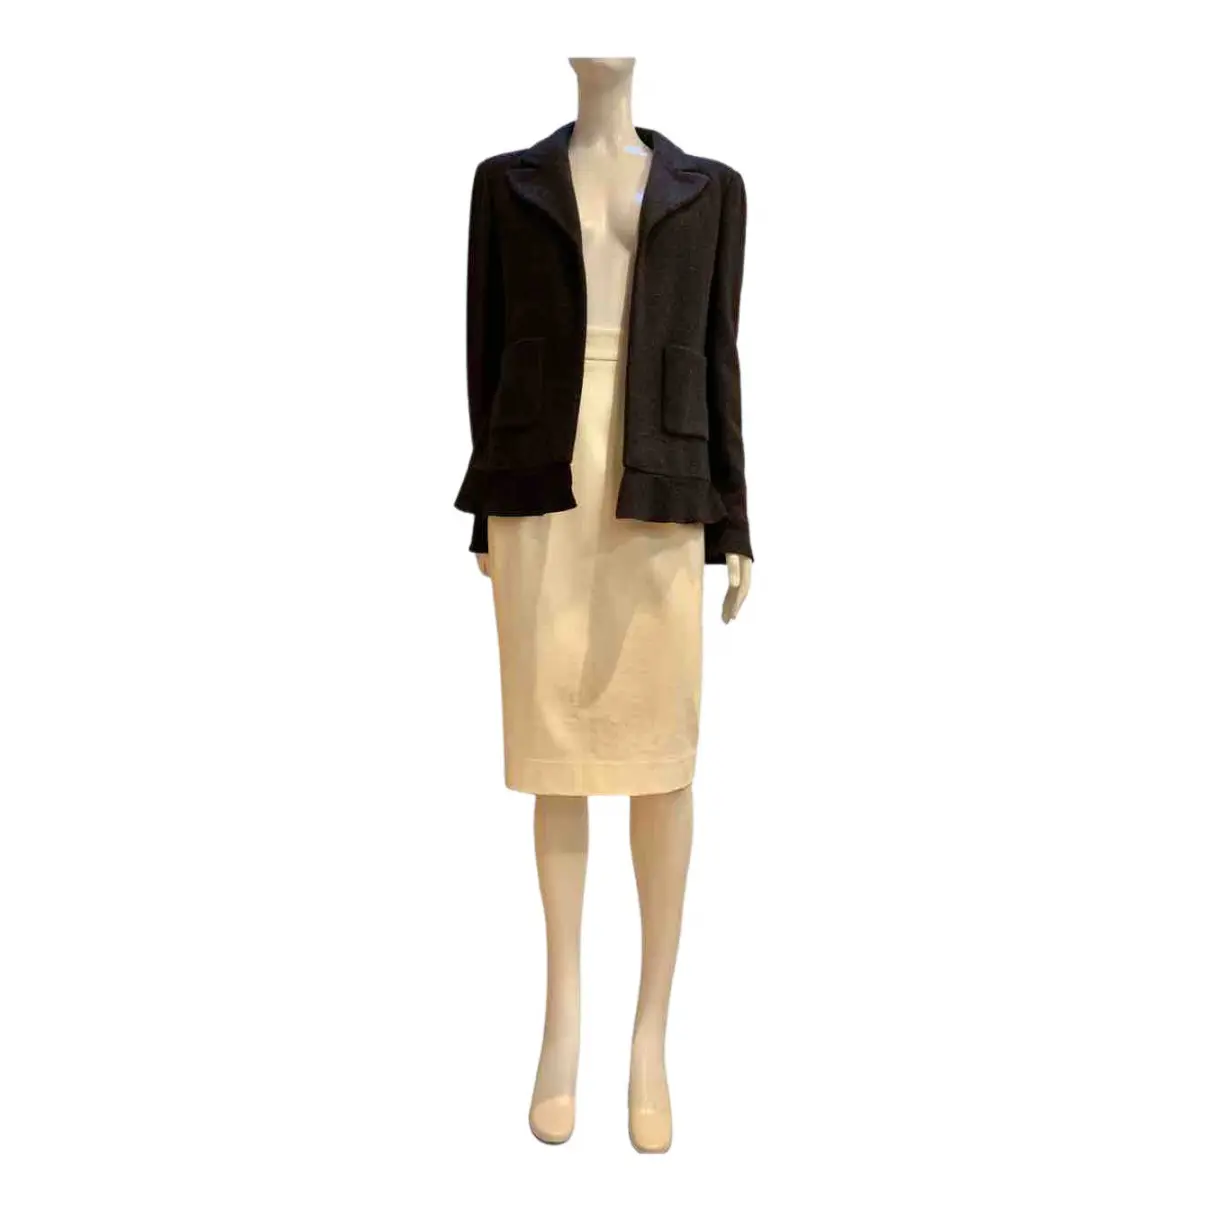 Buy Chanel Tweed jacket online - Vintage